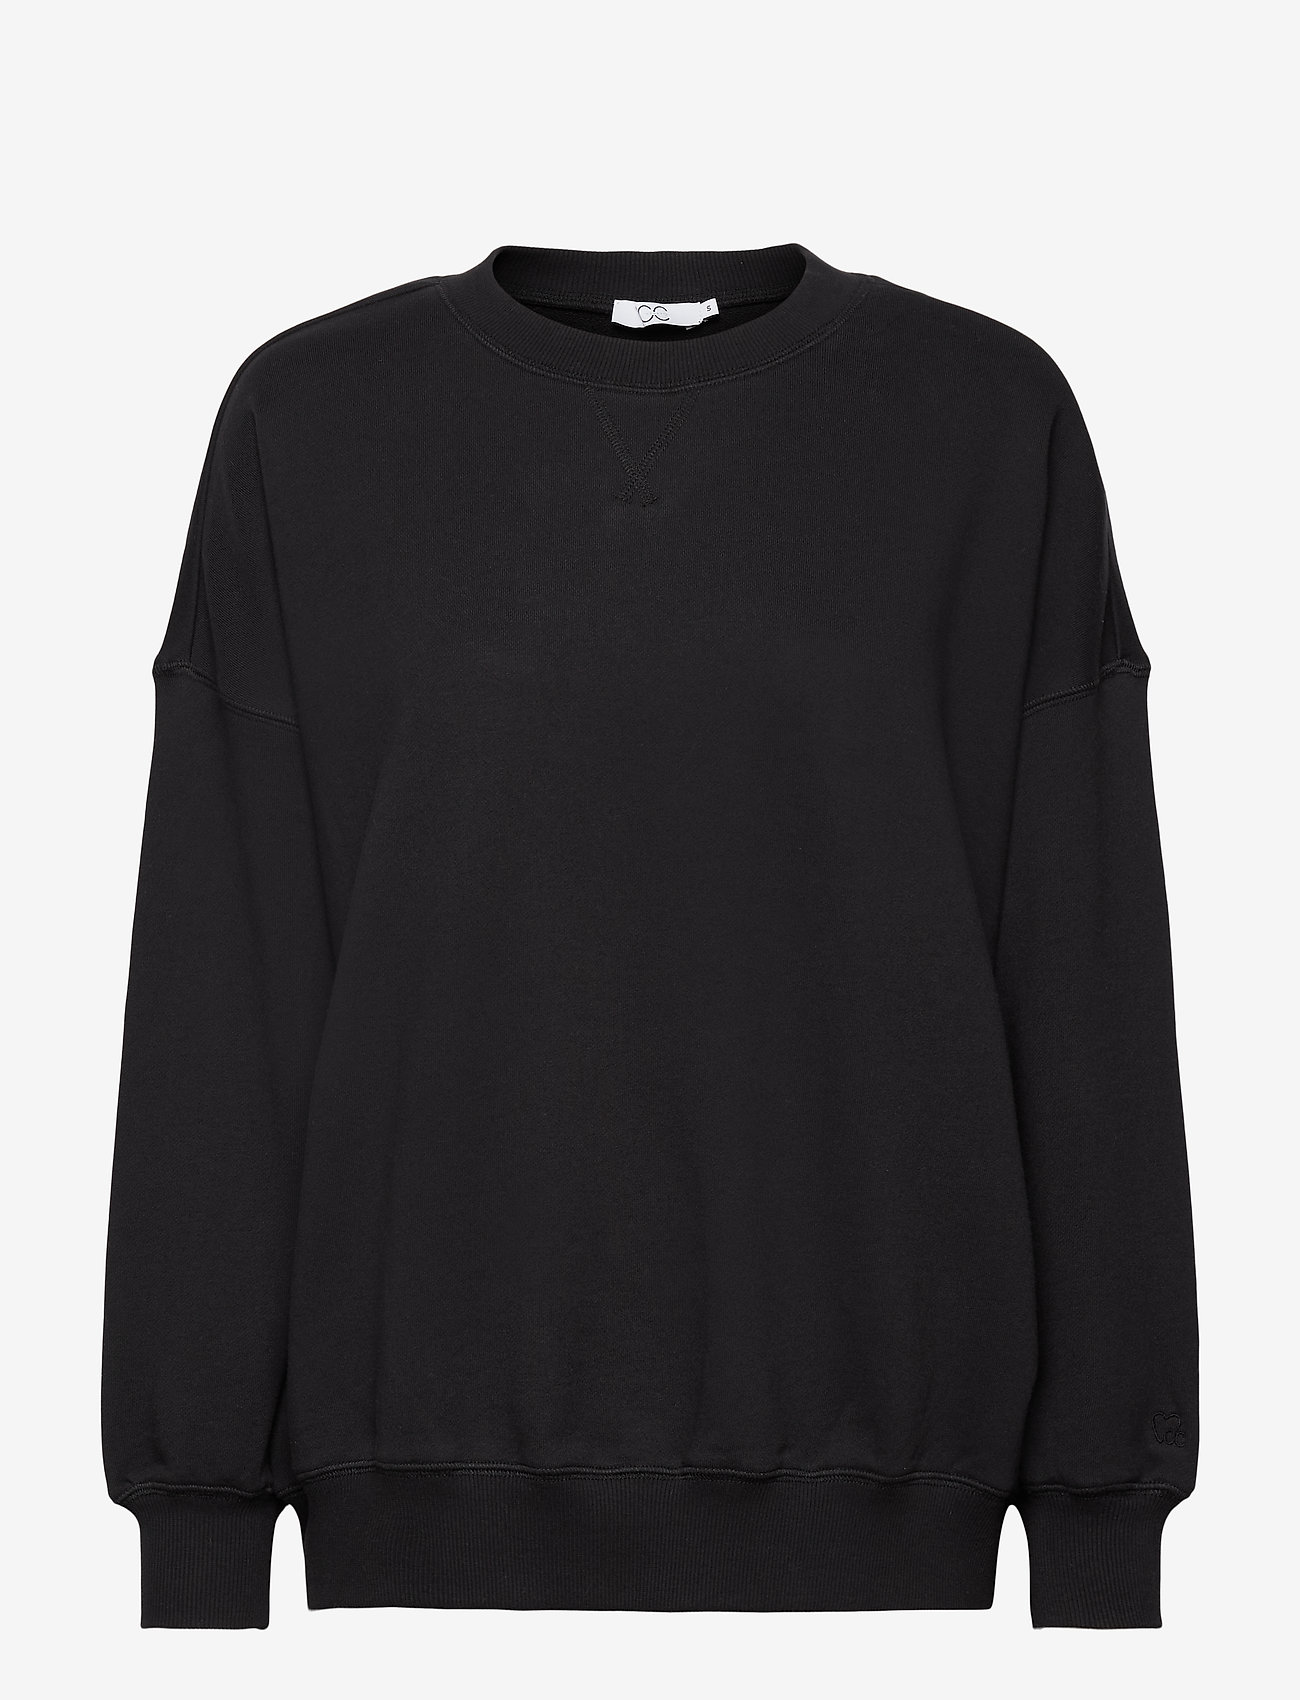 Coster Copenhagen - CC Heart oversize sweatshirt - sweatshirts - black - 0